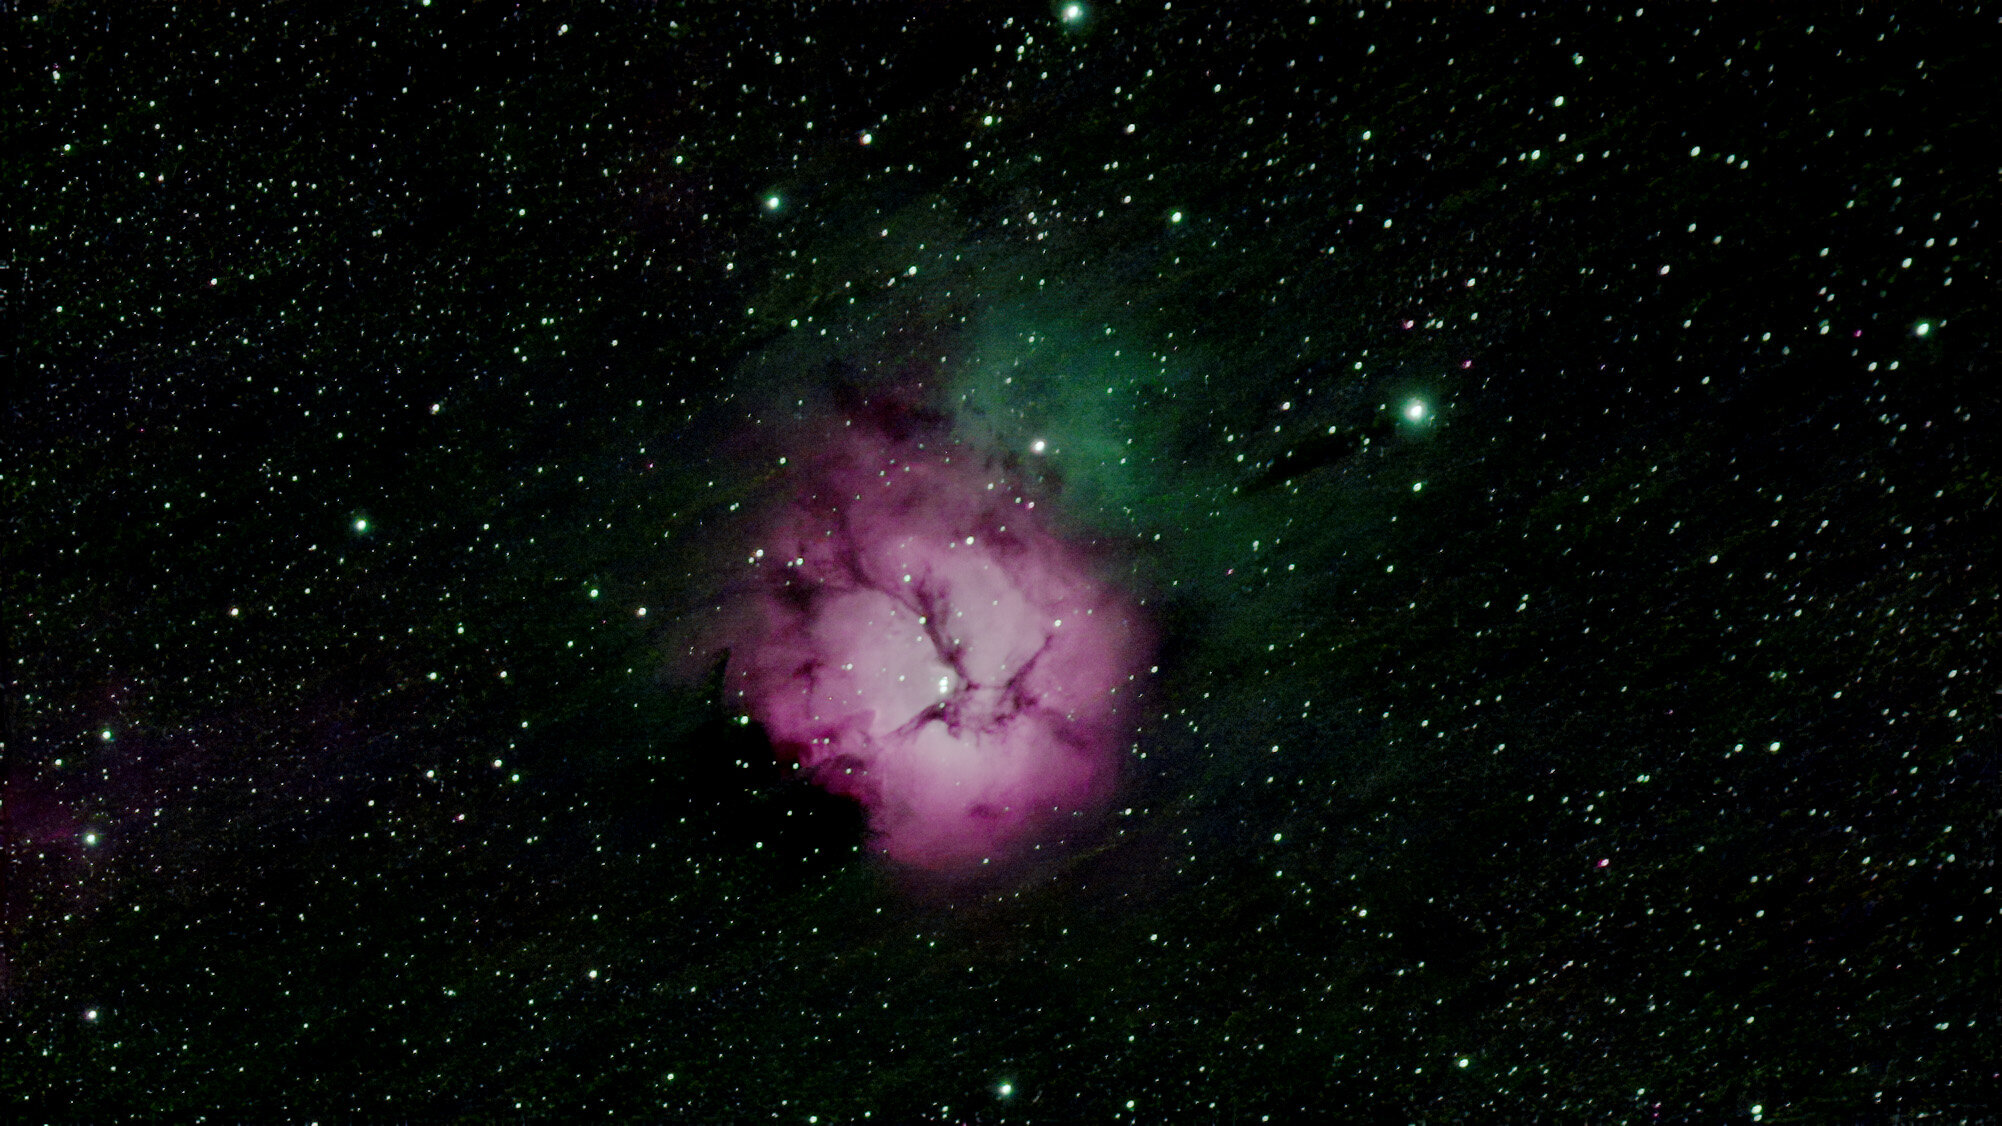 The Trifid Nebula-M20